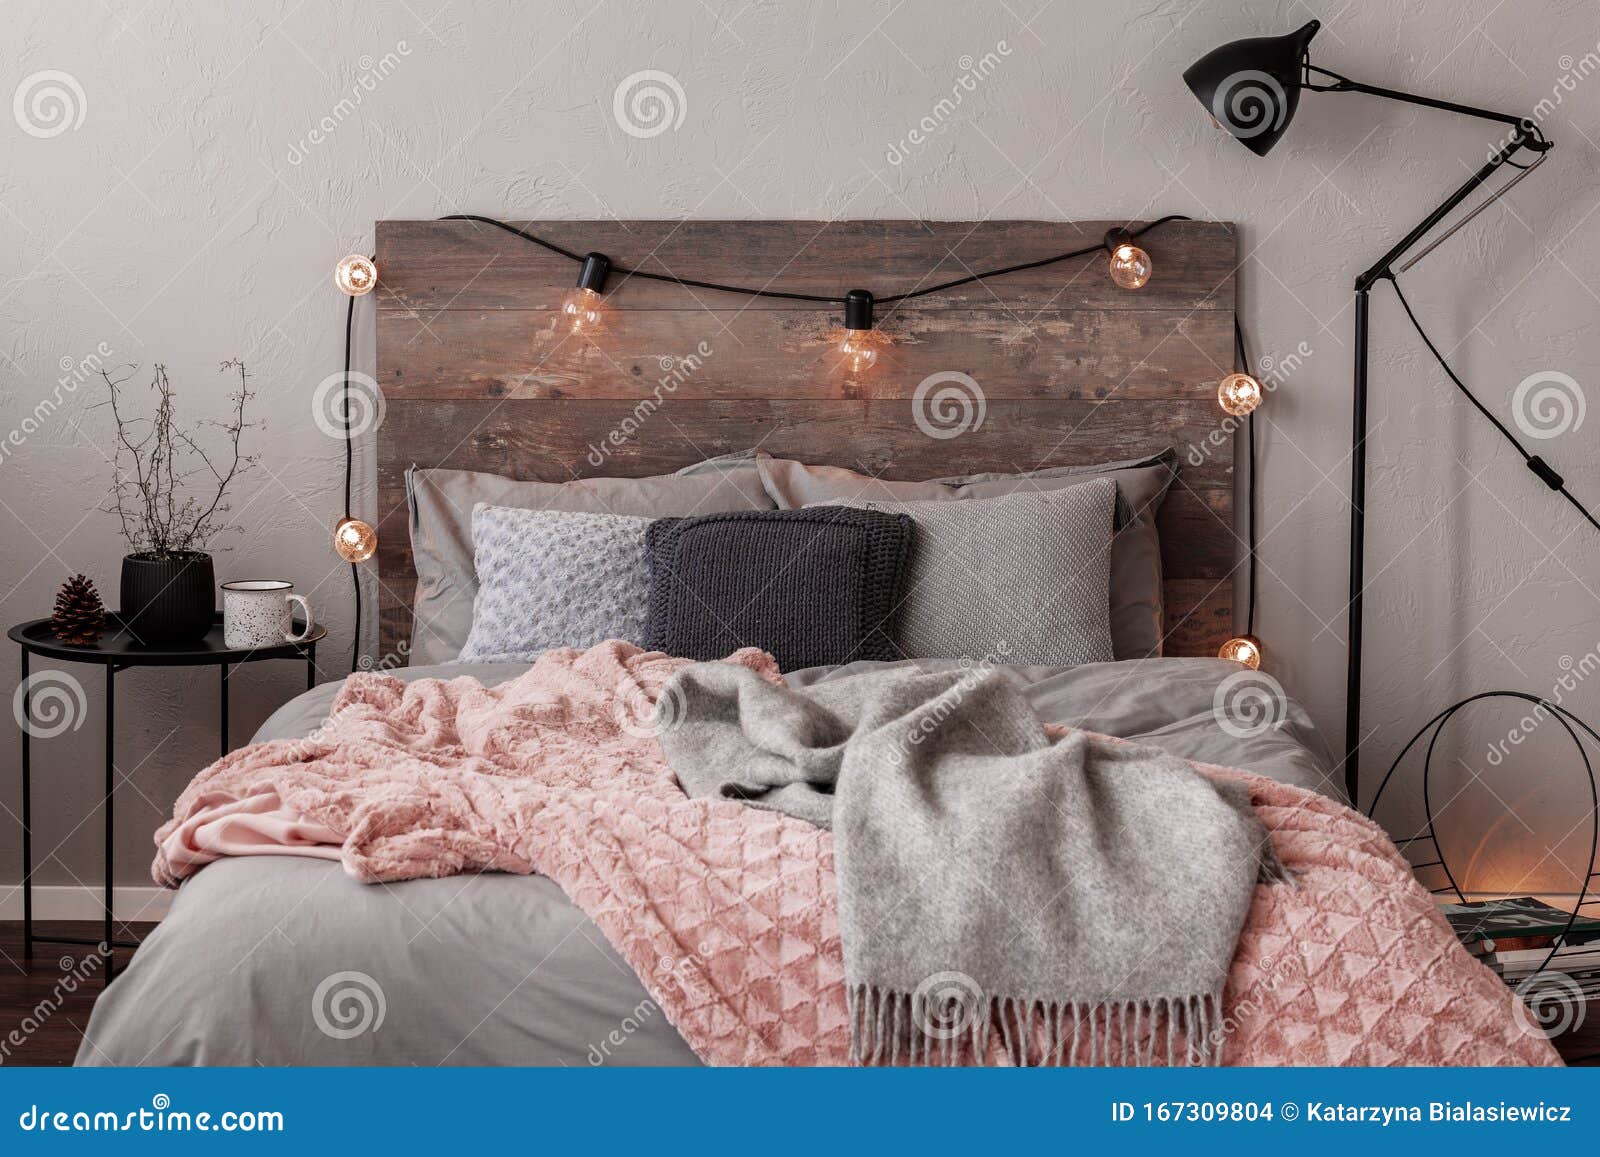 Серый и пастельное розовое одеяло в серых постельное белье фешенебельнойспальни Стоковое Фото - изображение насчитывающей плоско, шик: 167309804